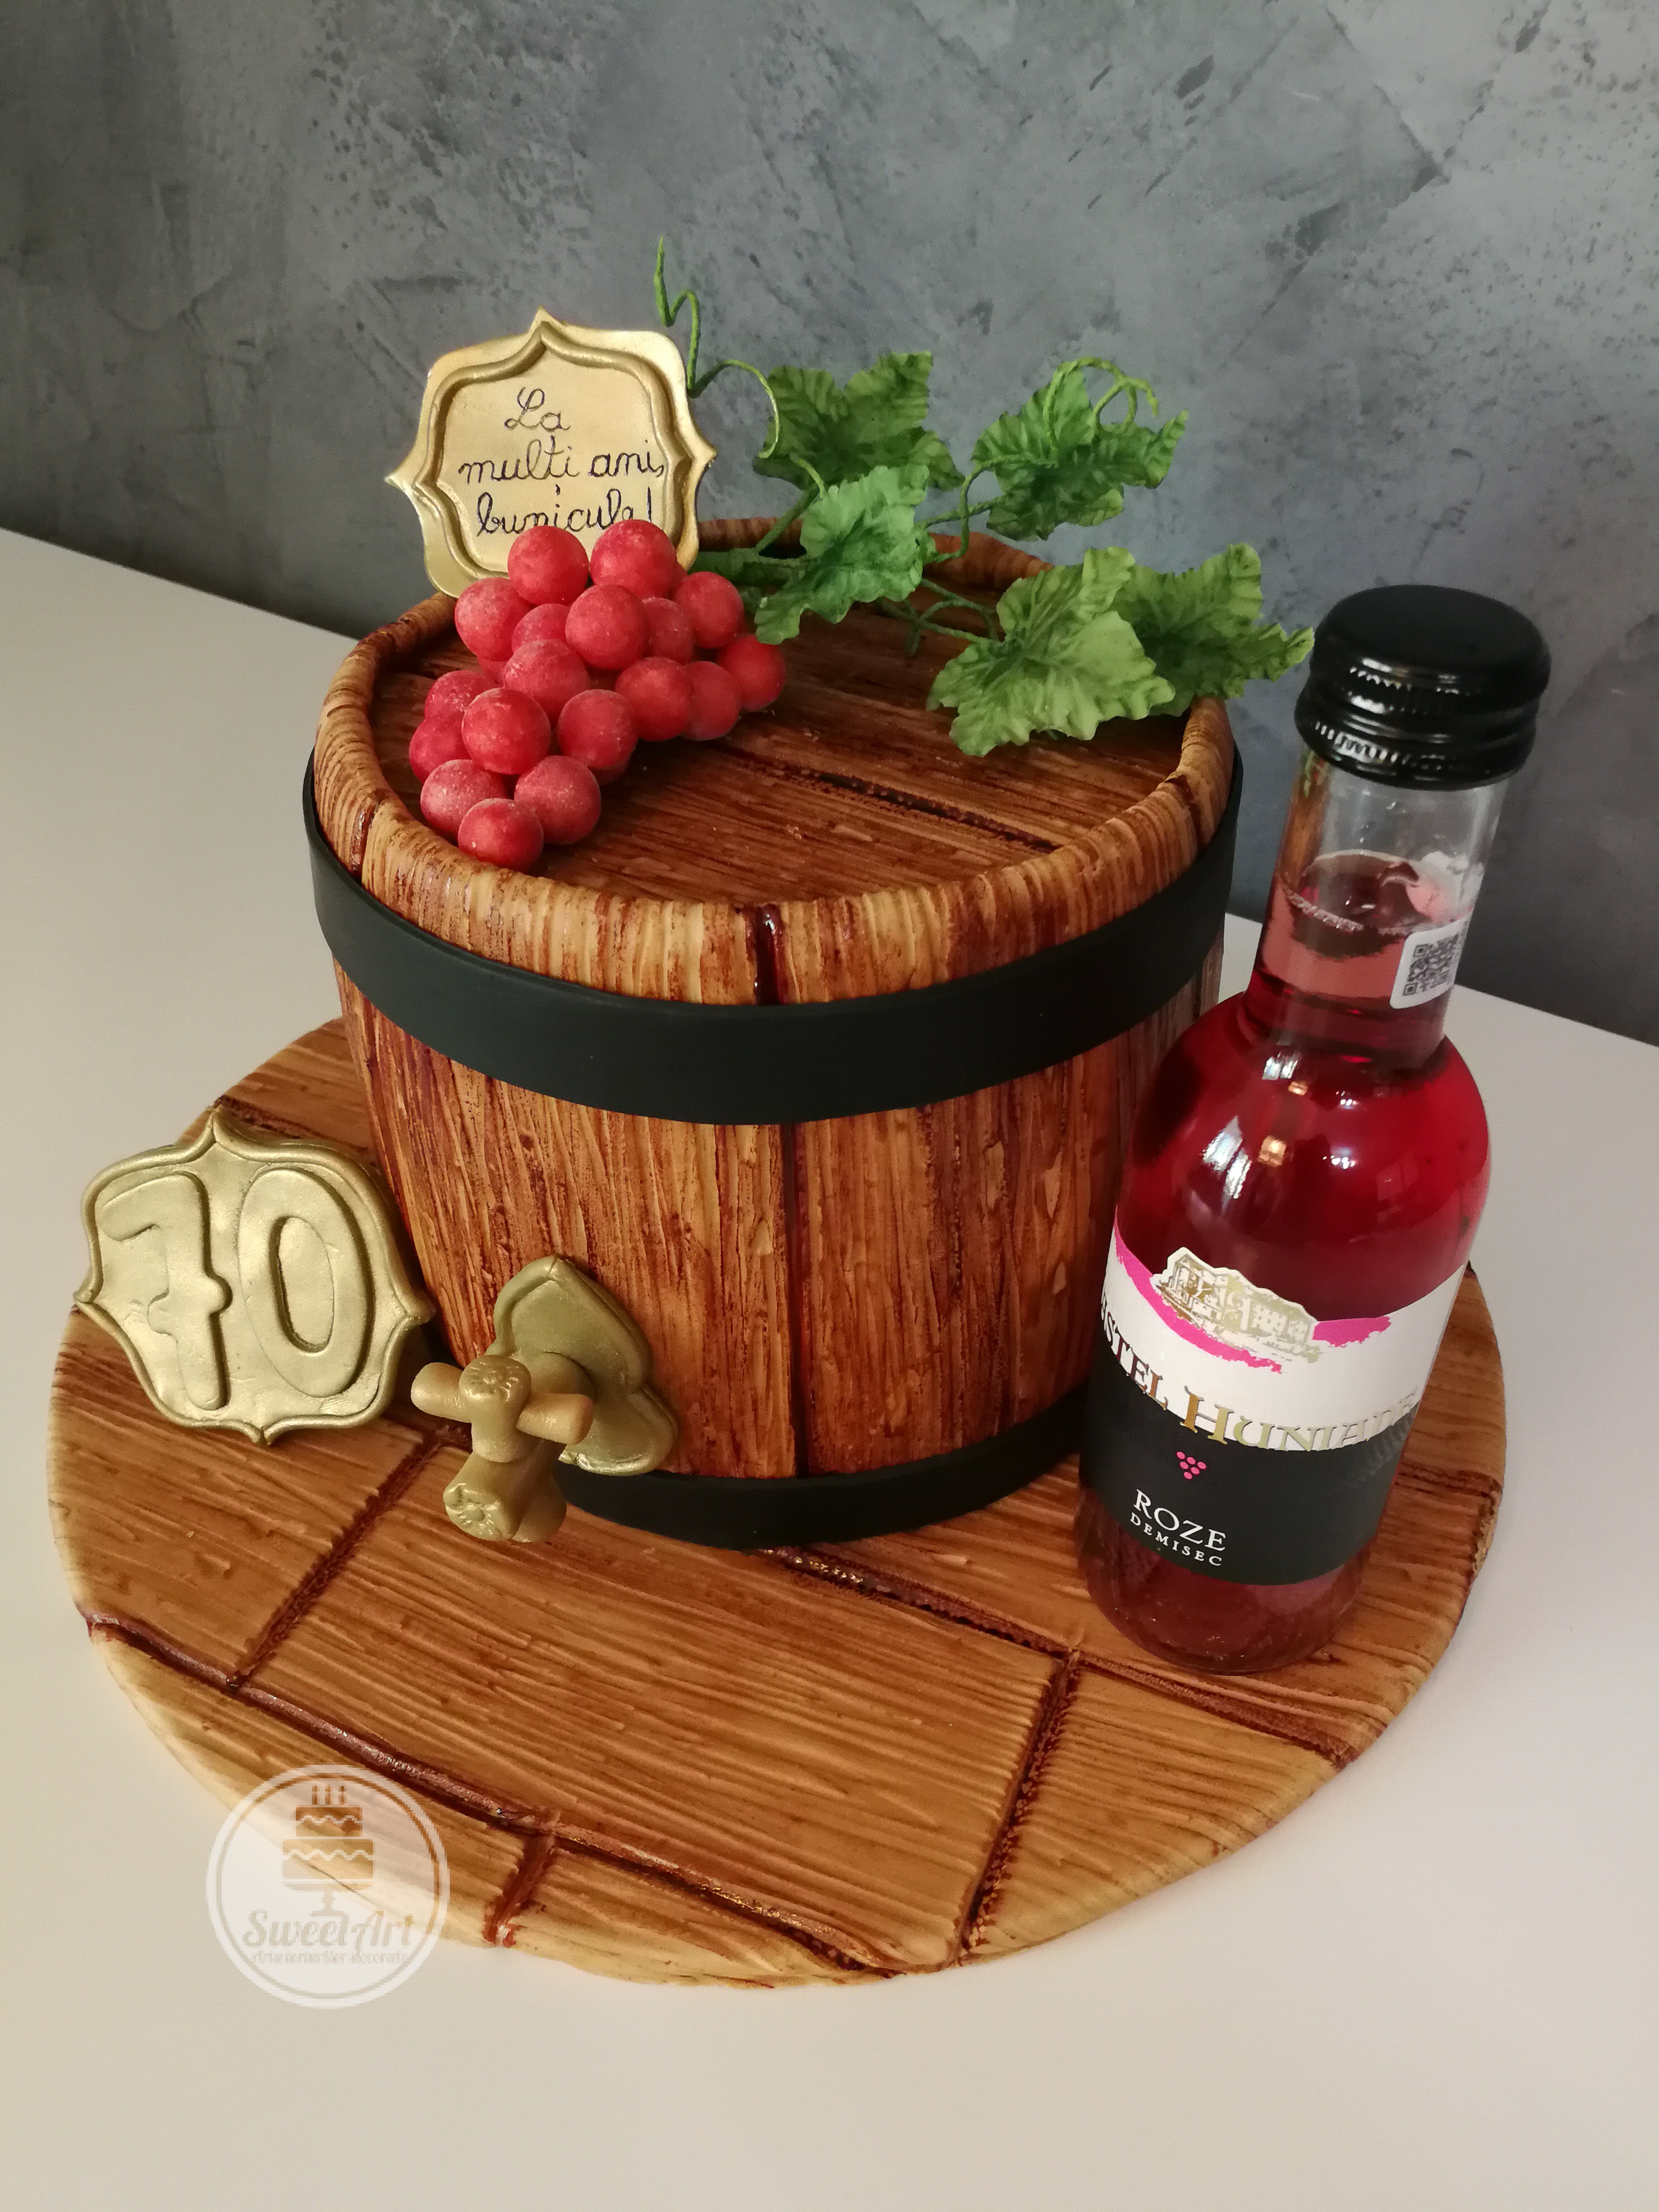 Tort butoiaș de vin din lemn cu robinet și cu o crenguță de viță de vie cu struguri Traminer roz, plăcuță cu vârsta și plăcuță cu mesaj La mulți ani!